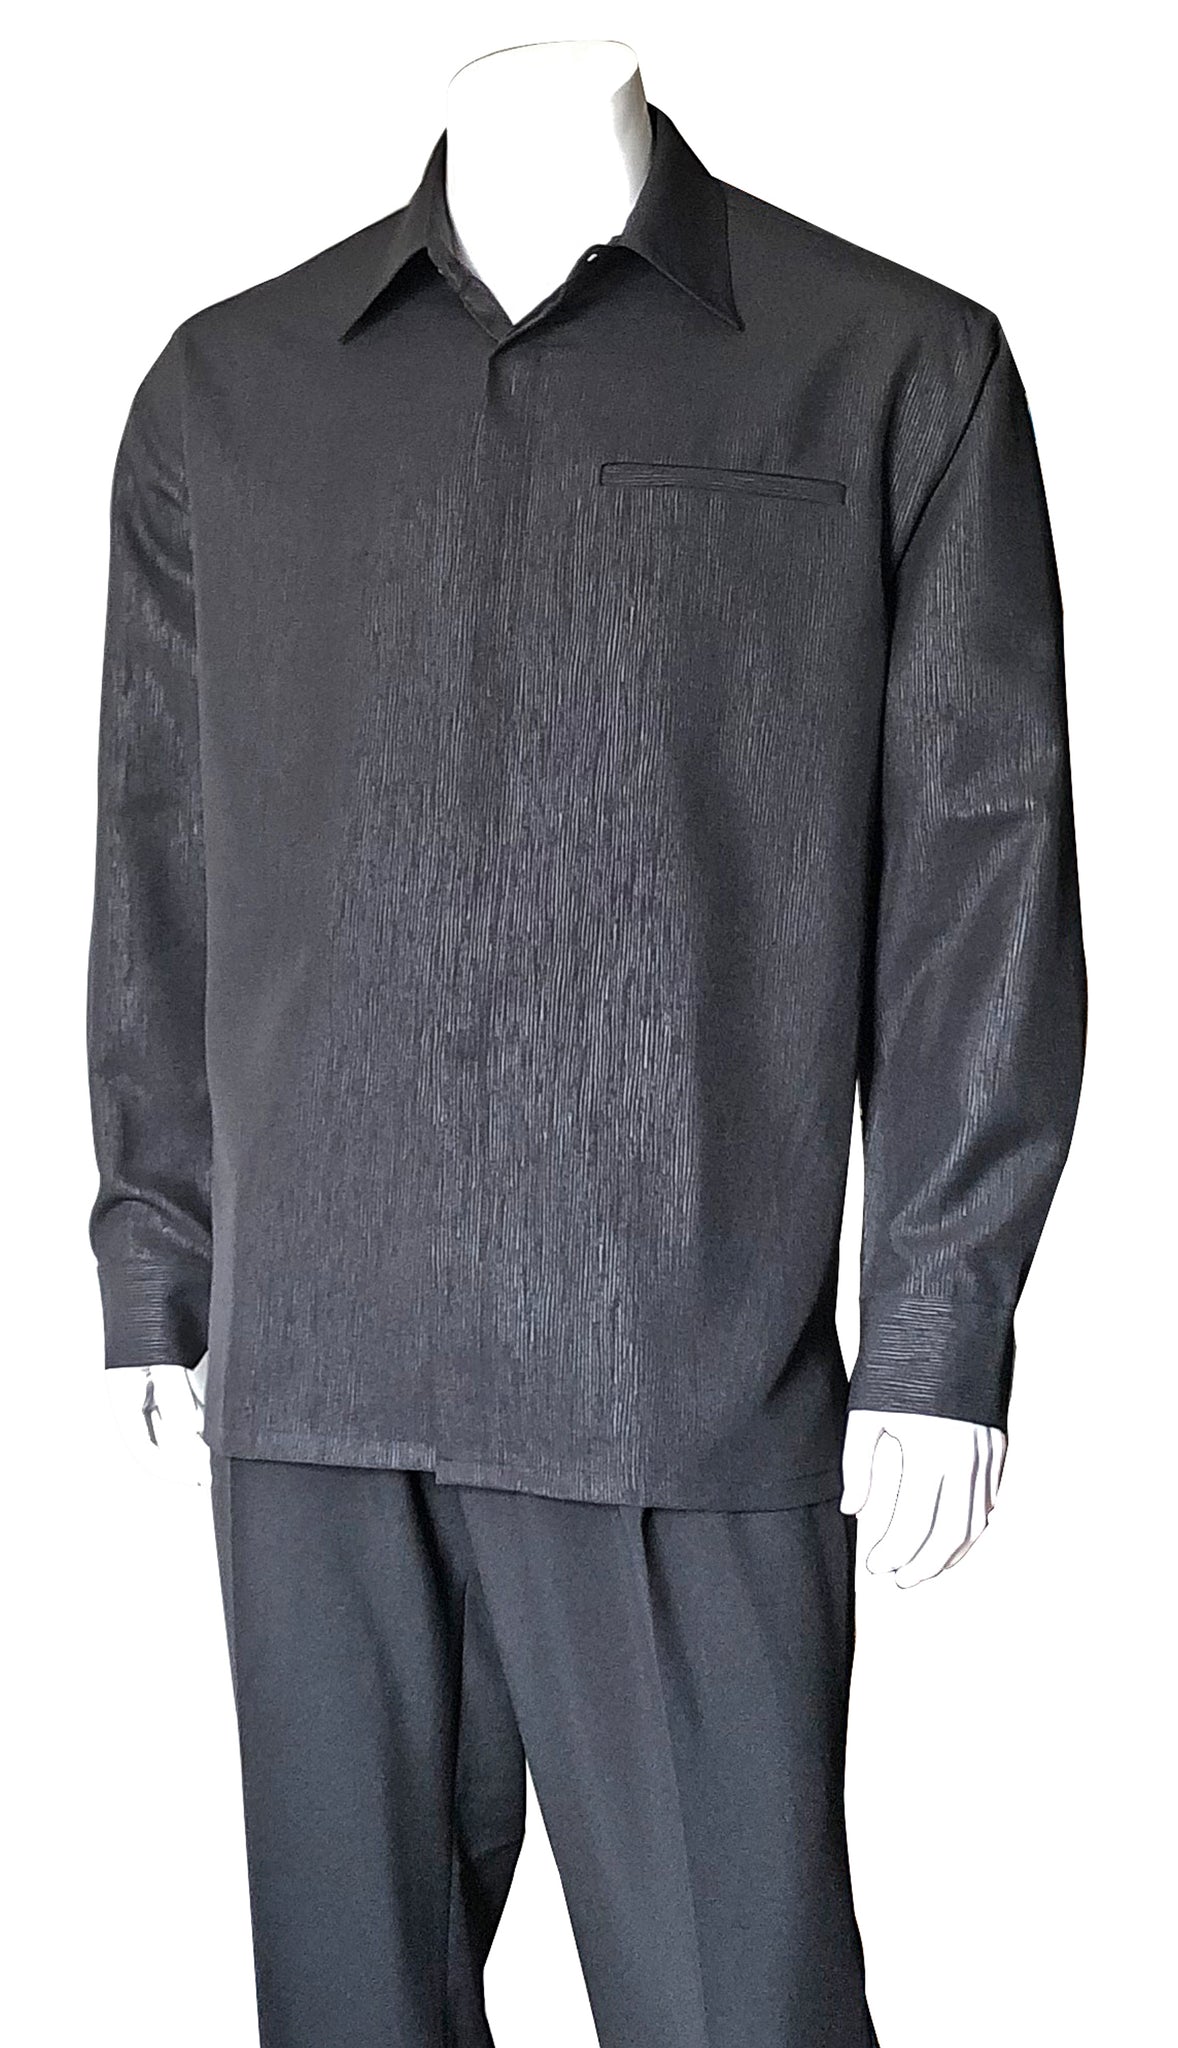 Fortino Landi Walking Set M2764-Black - Church Suits For Less